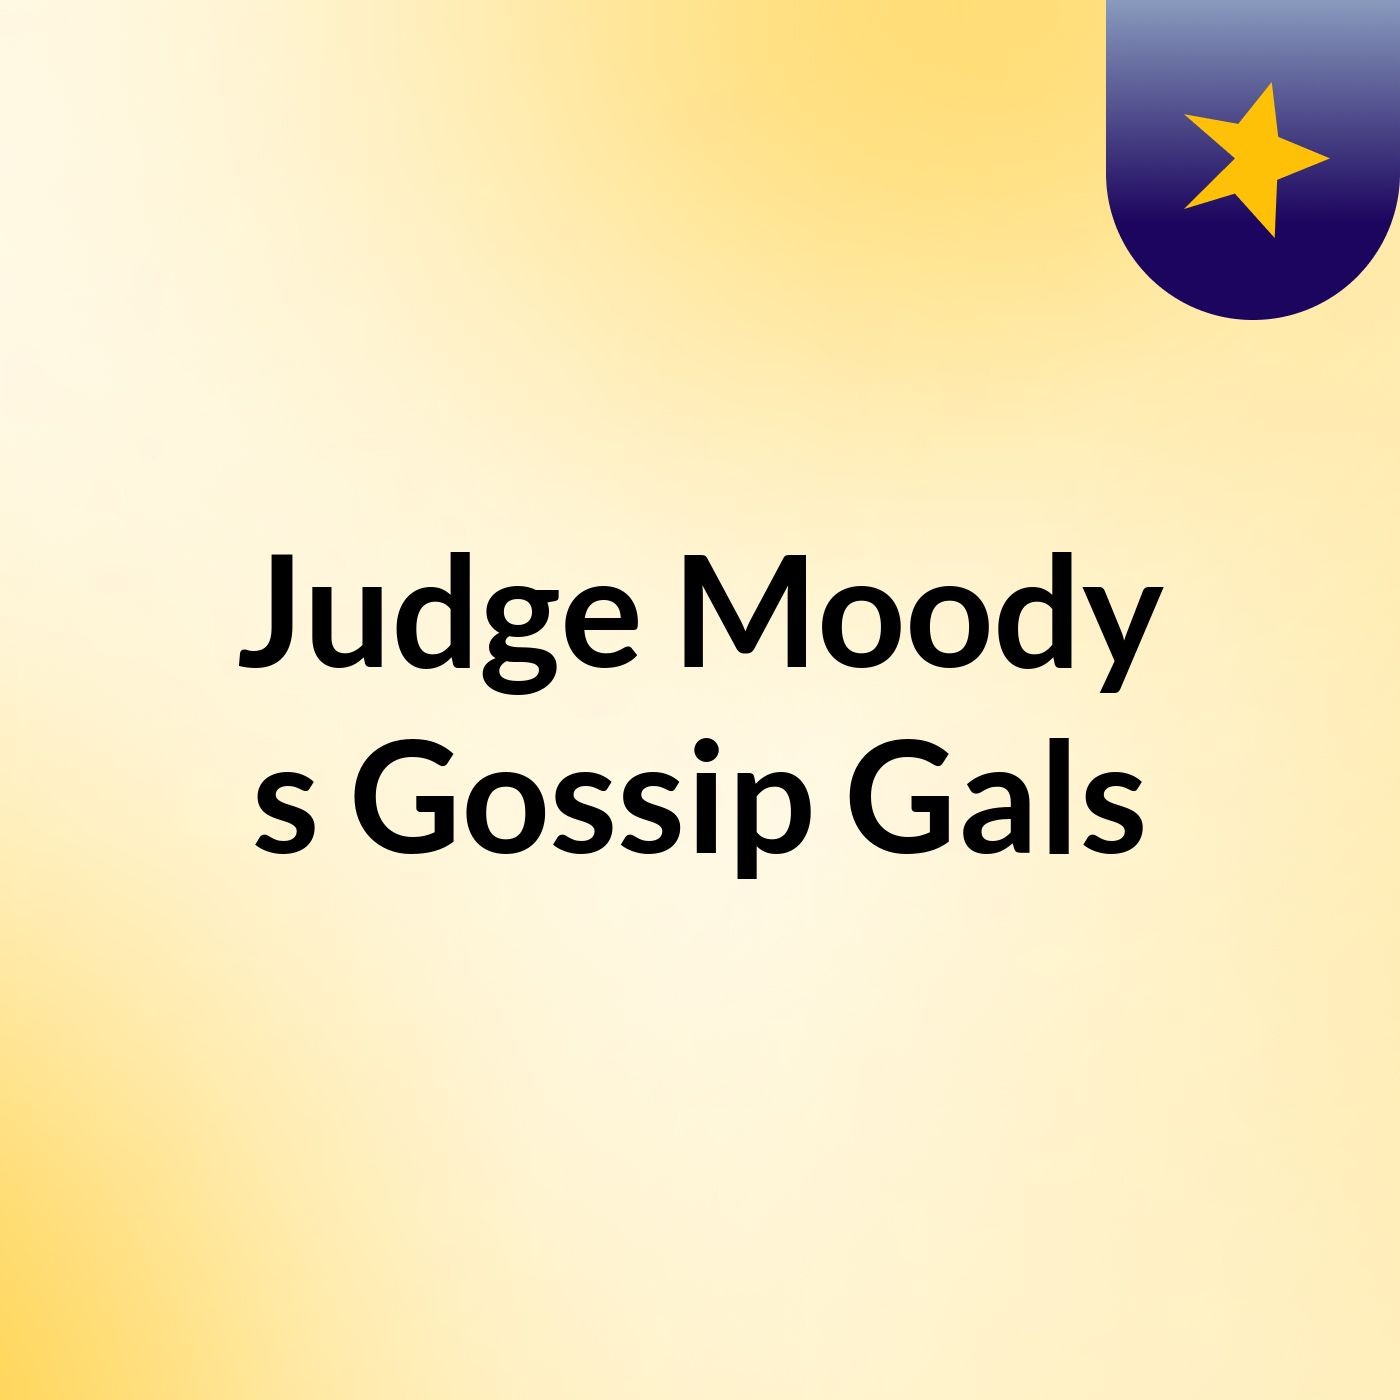 Judge Moody's Gossip Gals